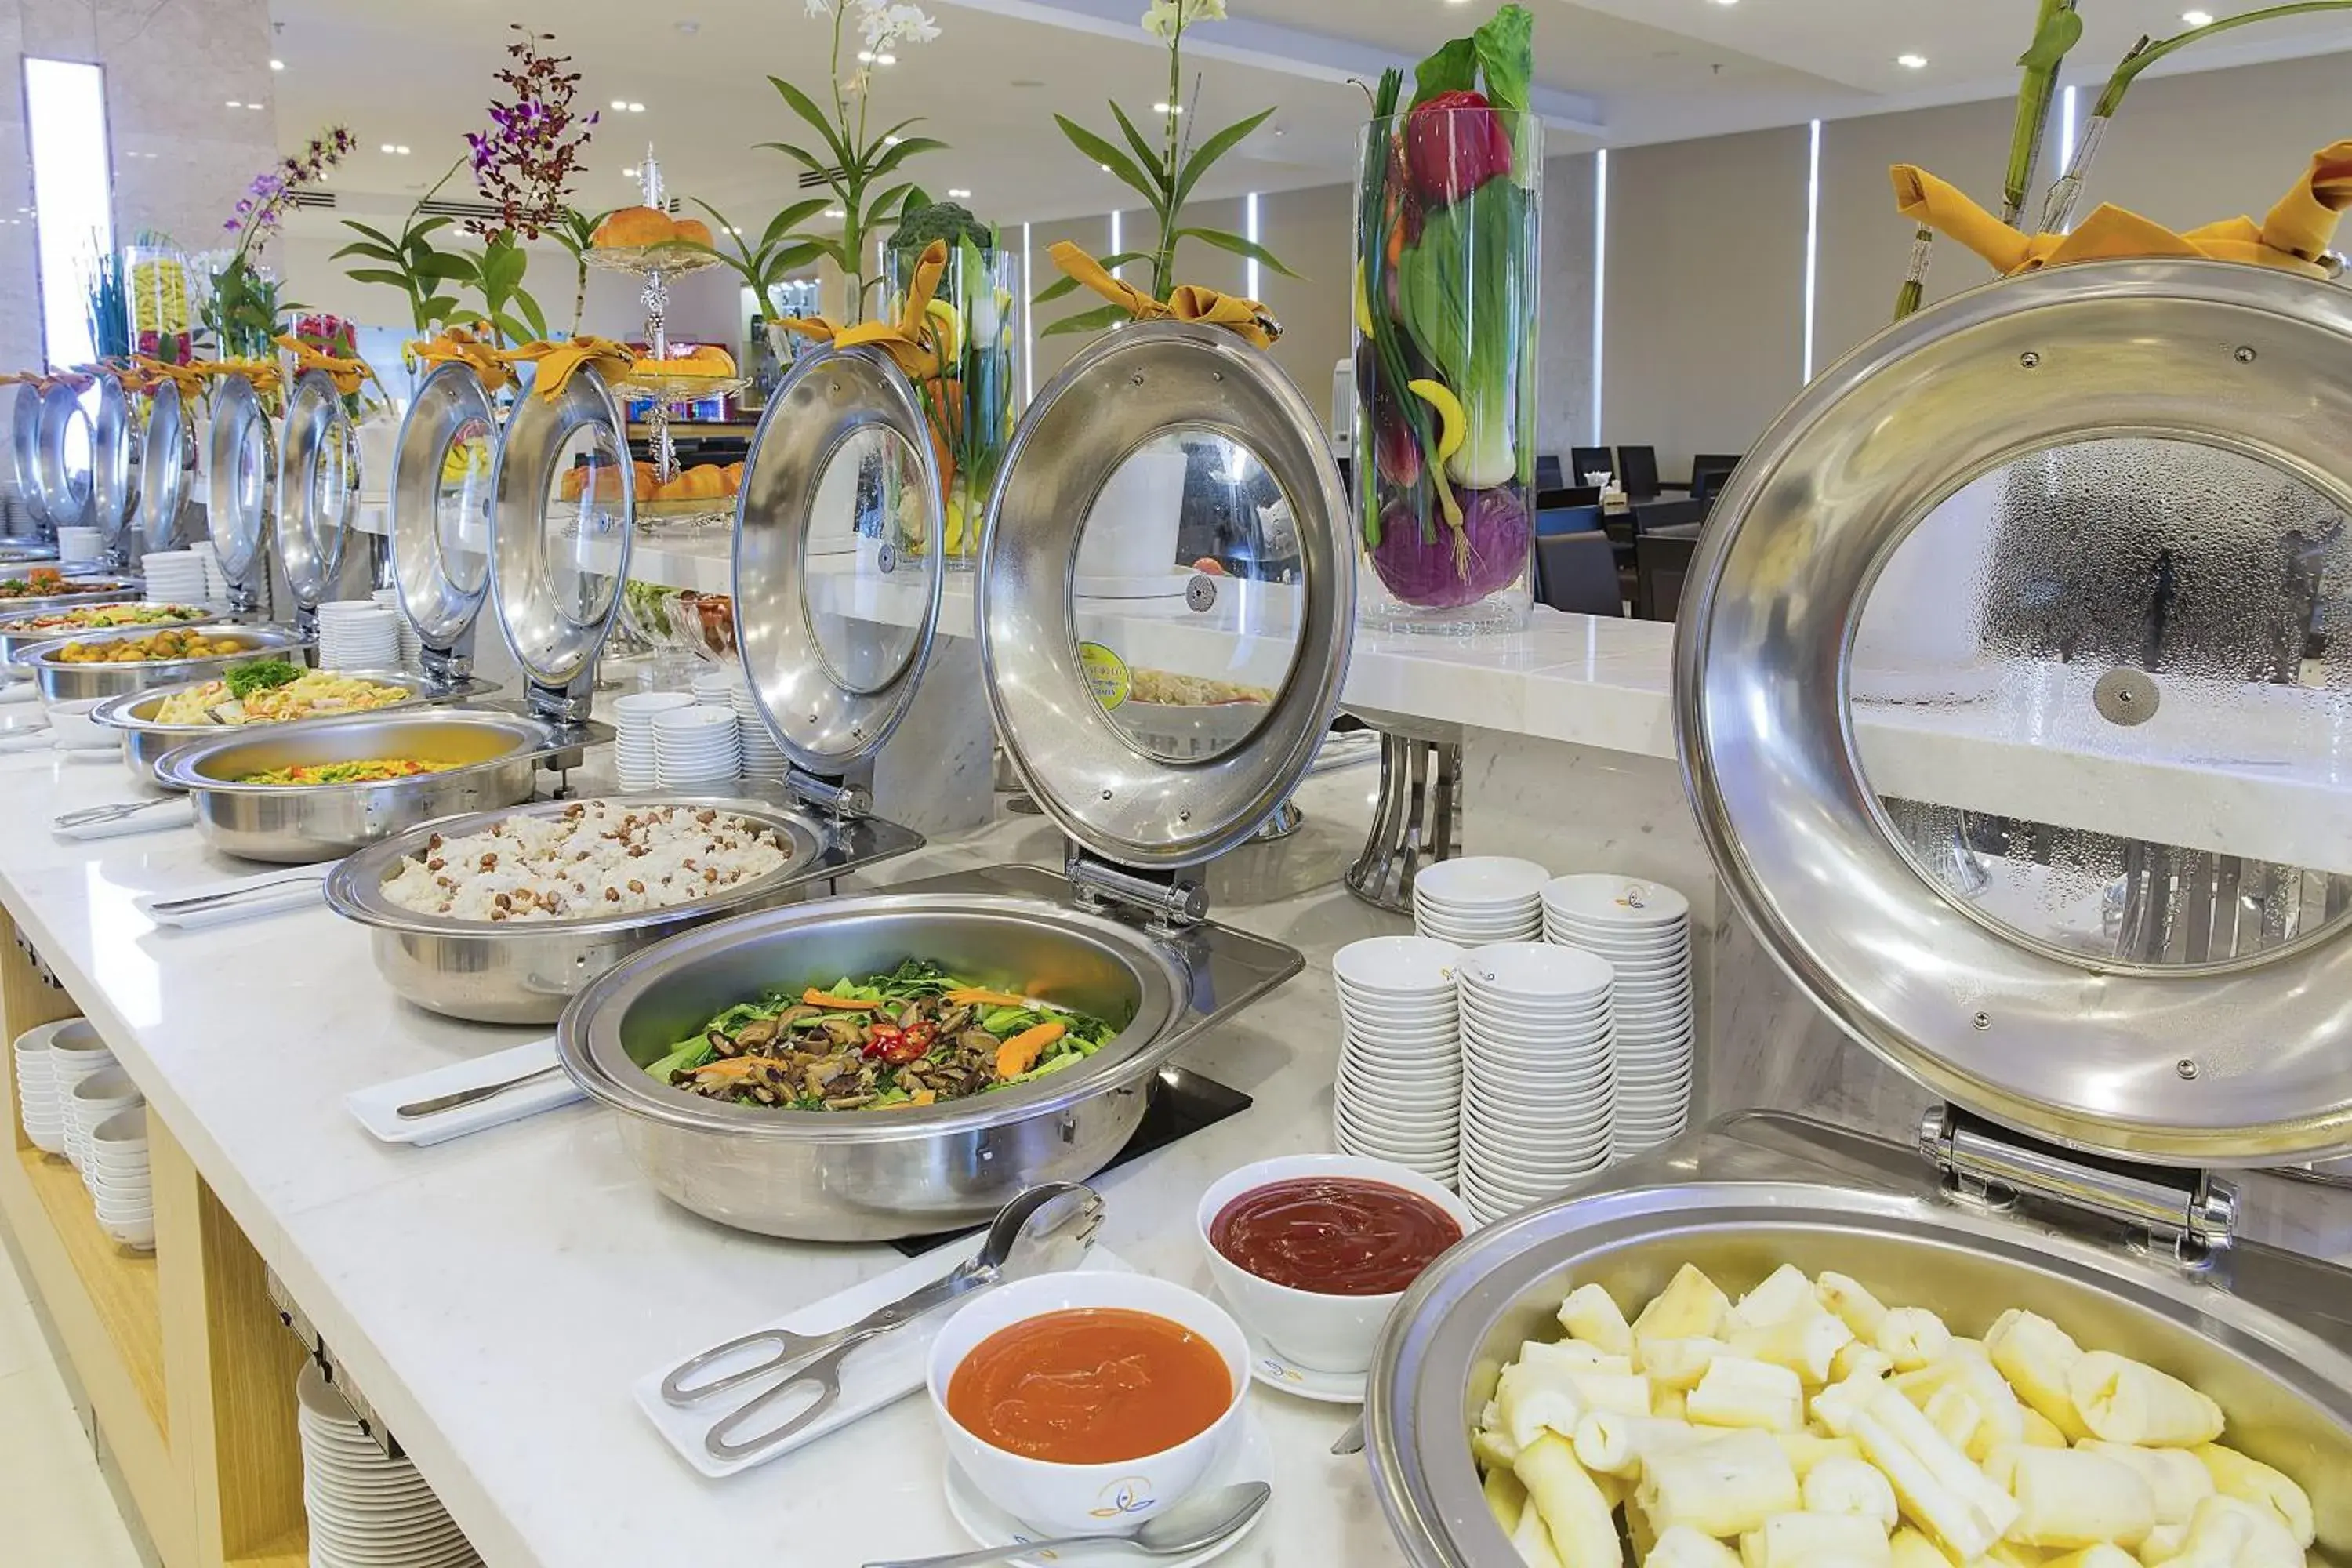 Buffet breakfast in Dendro Gold Hotel